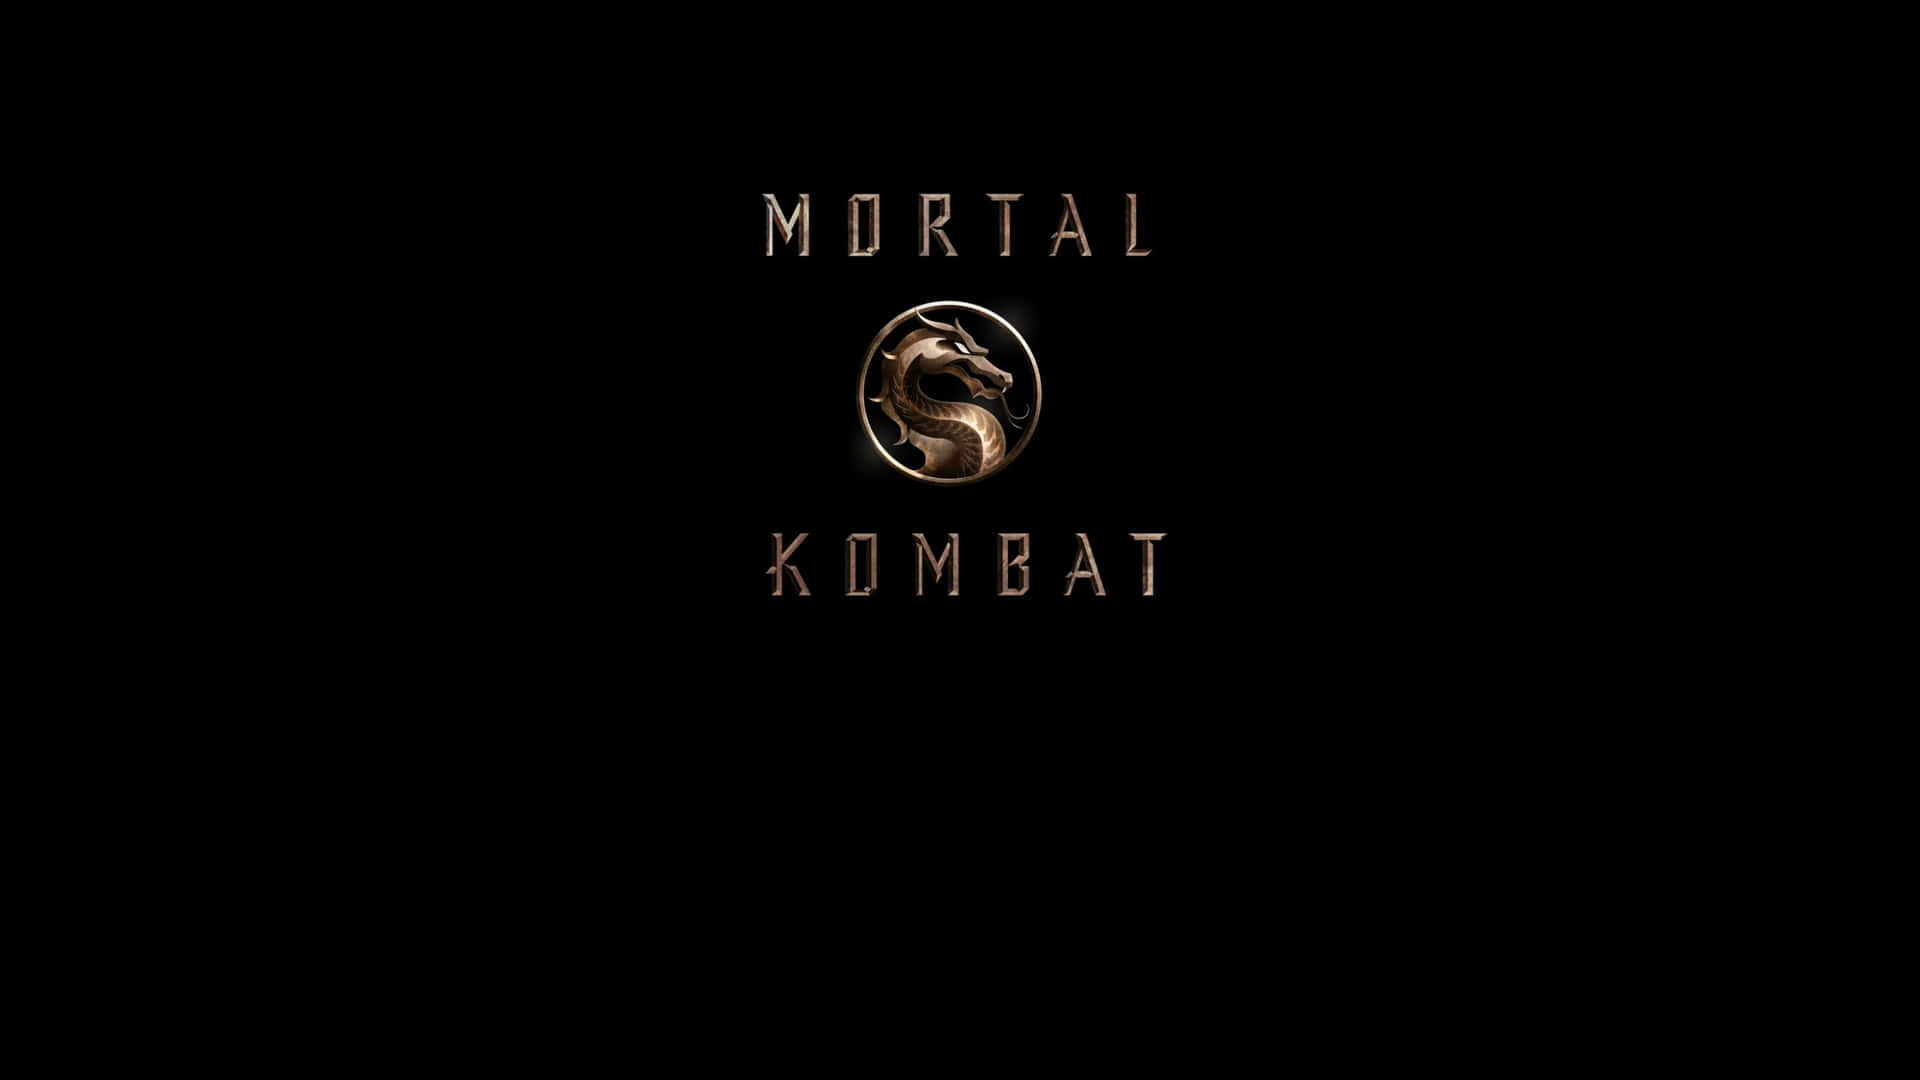 Haiscelto Il Tuo Combattente Per Mortal Kombat 2021? Sfondo